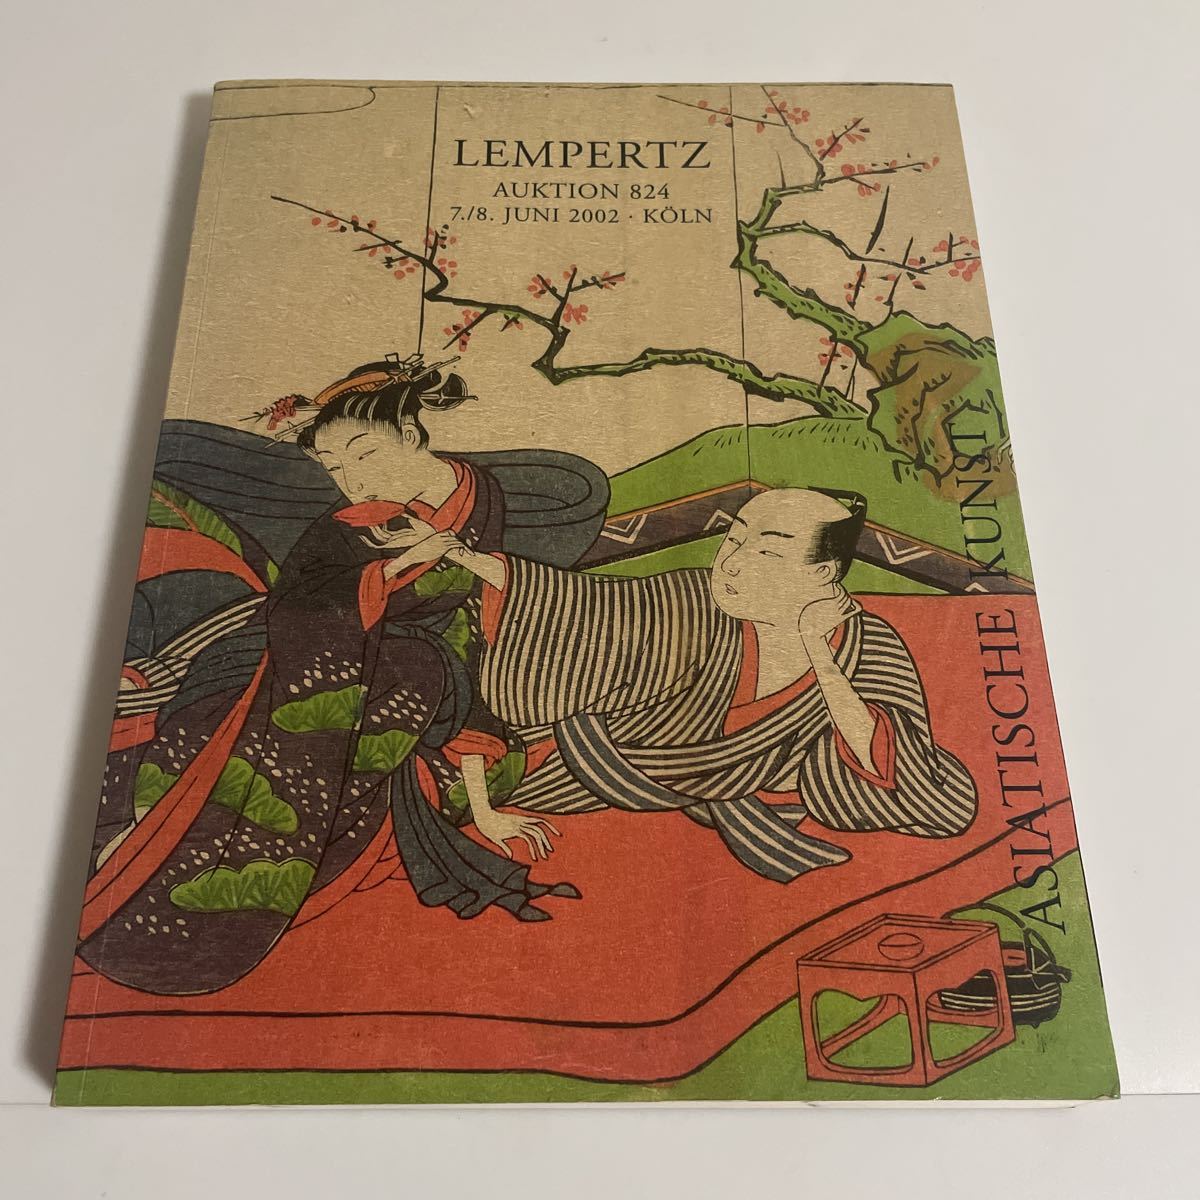 LEMPERTZ AUKTION 824 독일 Lempertz 경매 카탈로그 목록 2002 불교 미술 불교 조각 도자기 그림 수묵화 우키요에 검, 등., 공예, 일러스트 카탈로그, 다른 사람